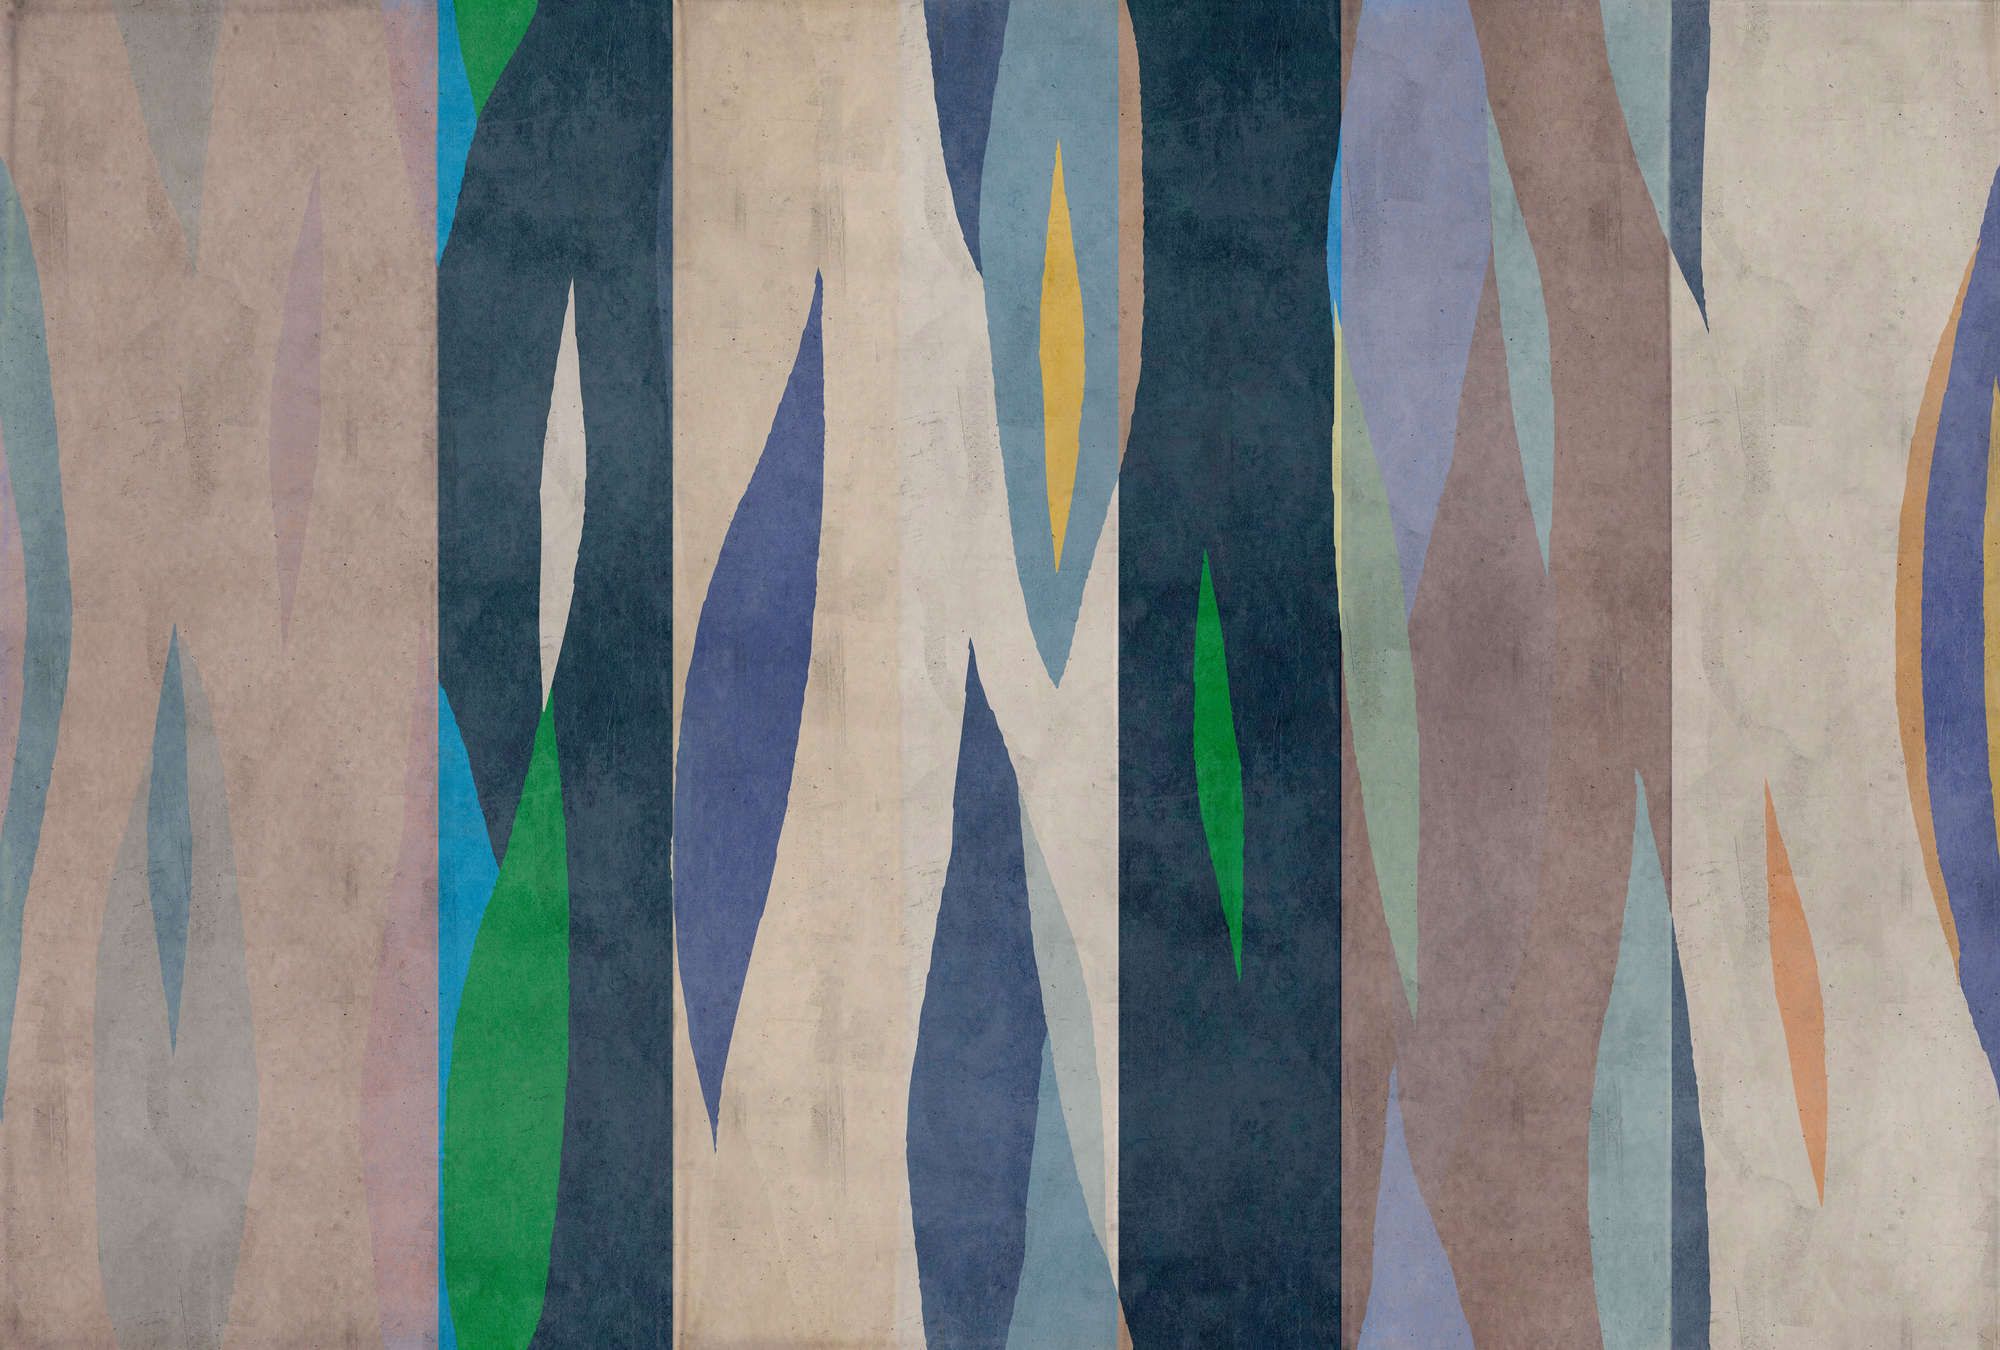             Fotomurali »vito« - Disegno di tigri colorate su intonaco di cemento - Blu, verde | Materiali non tessuto opaco e liscio
        